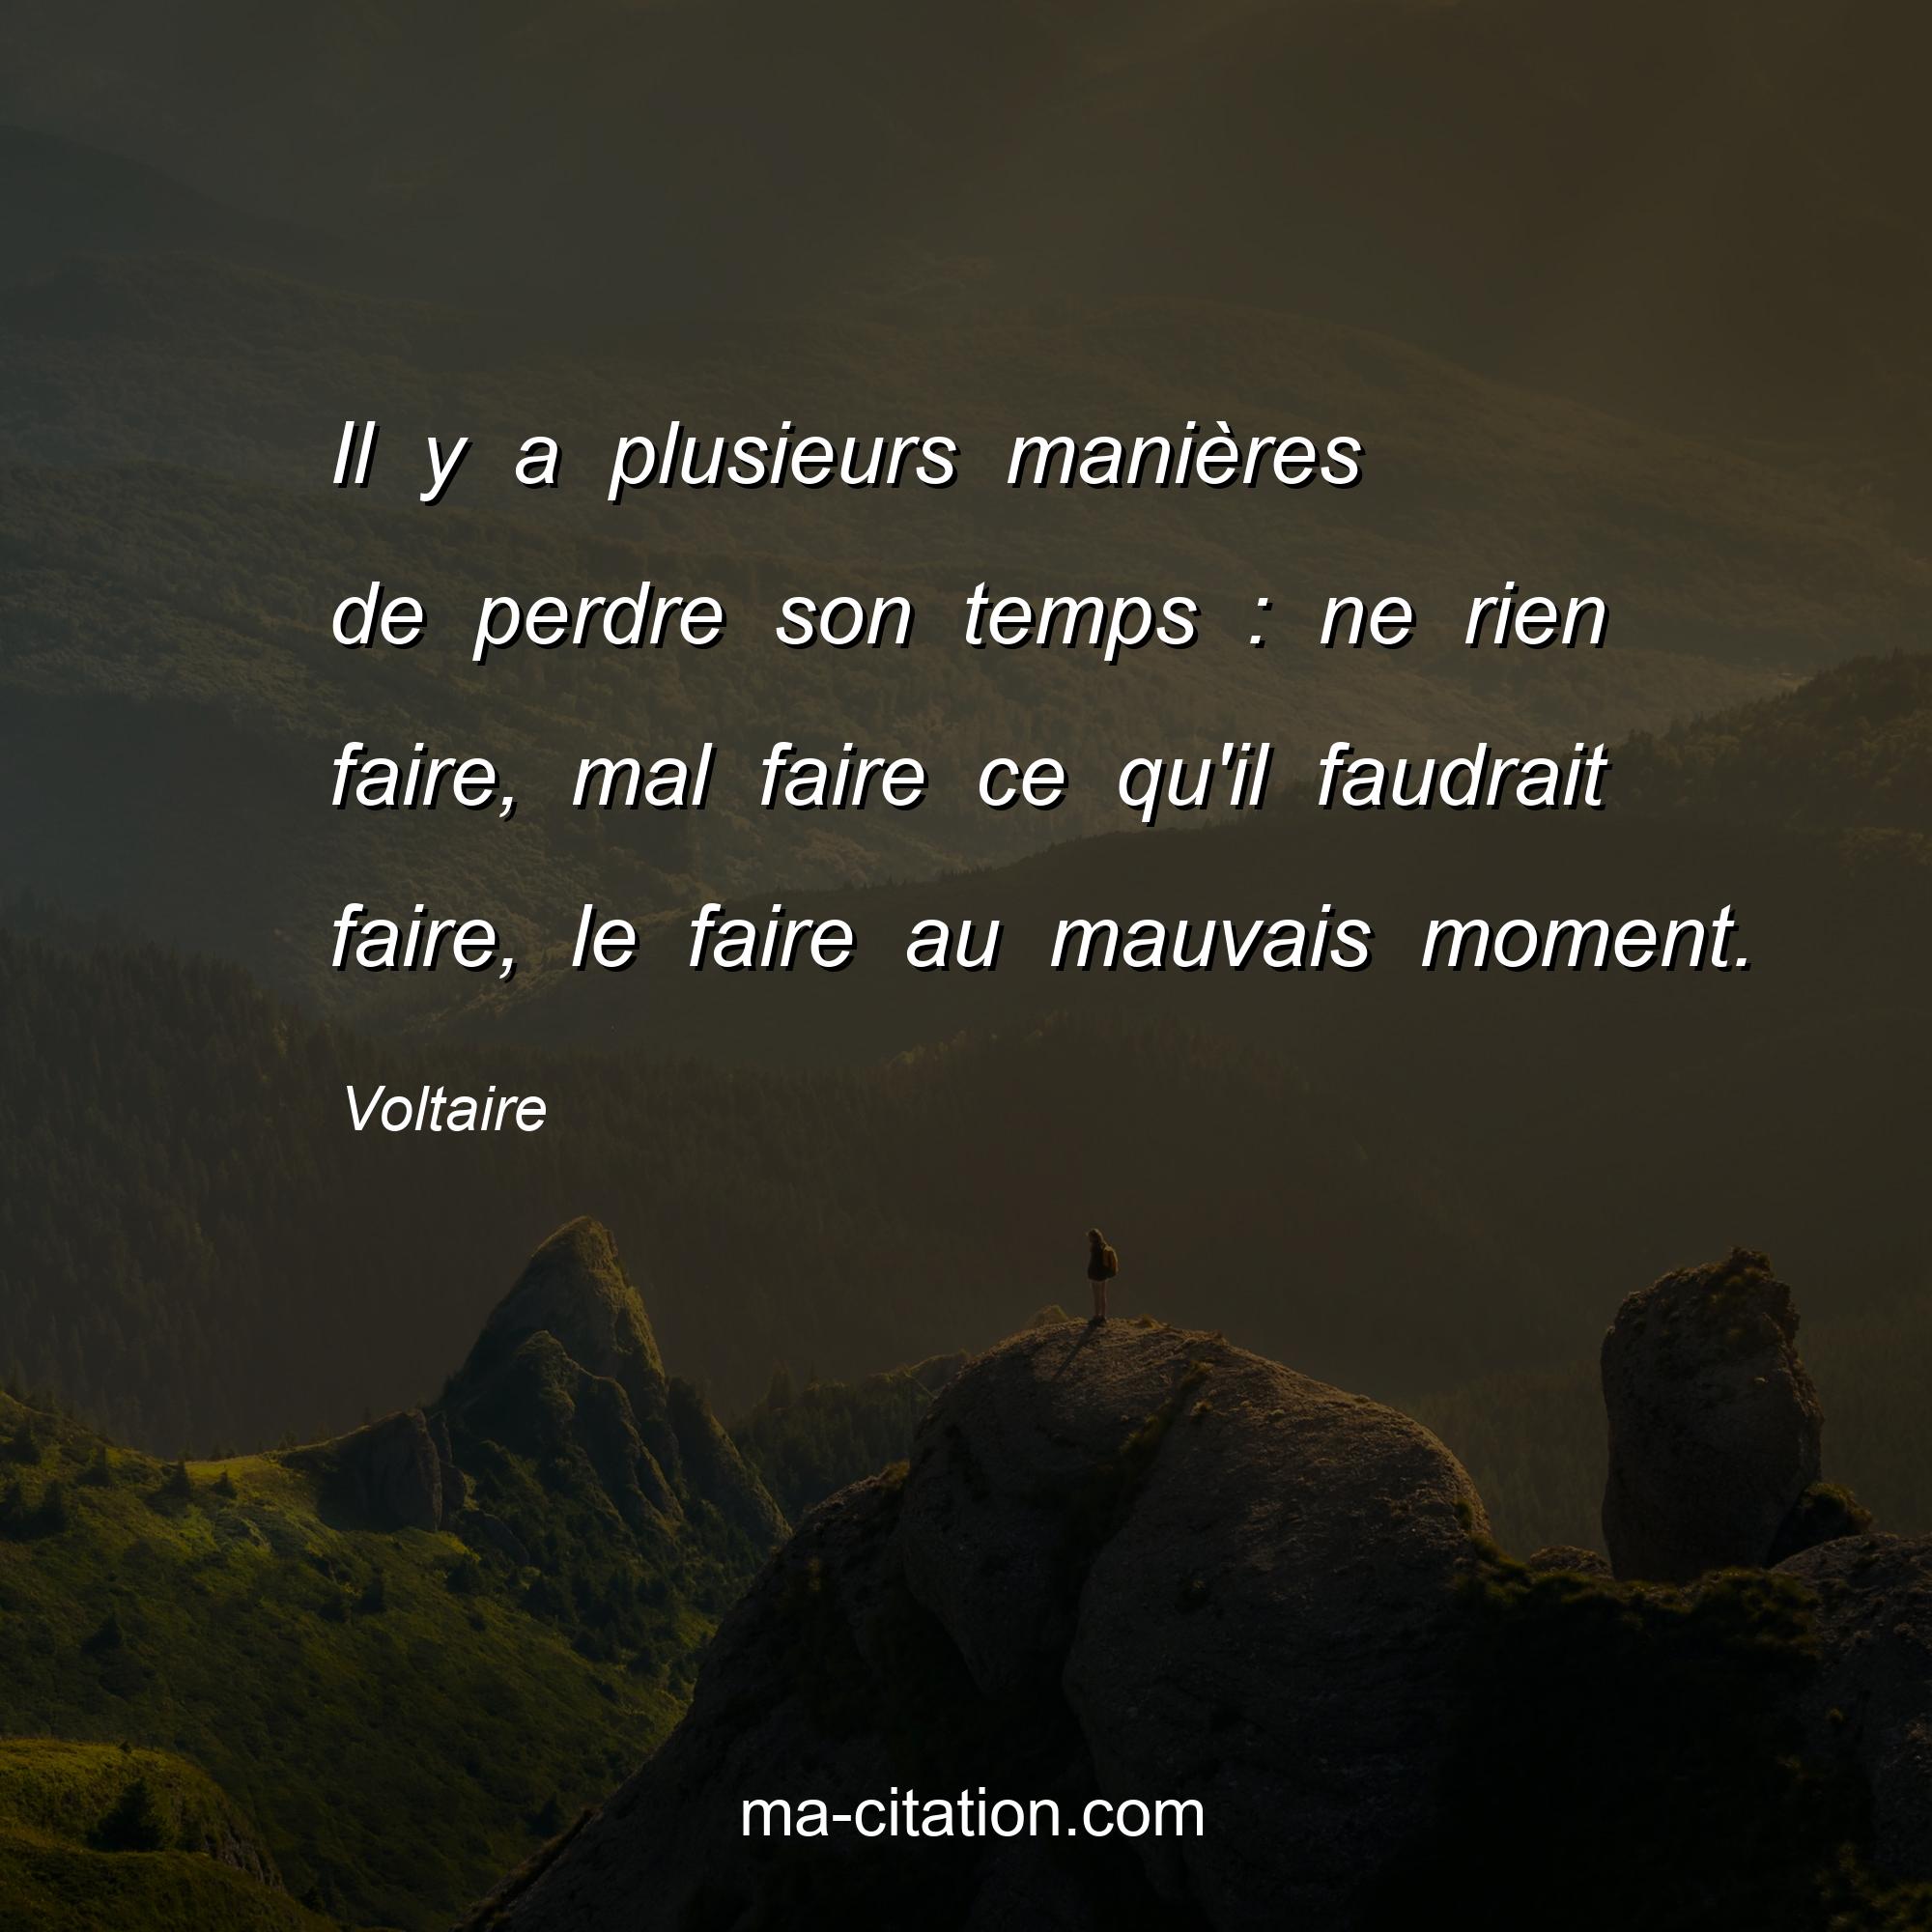 Voltaire : Il y a plusieurs manières de perdre son temps : ne rien faire, mal faire ce qu'il faudrait faire, le faire au mauvais moment.